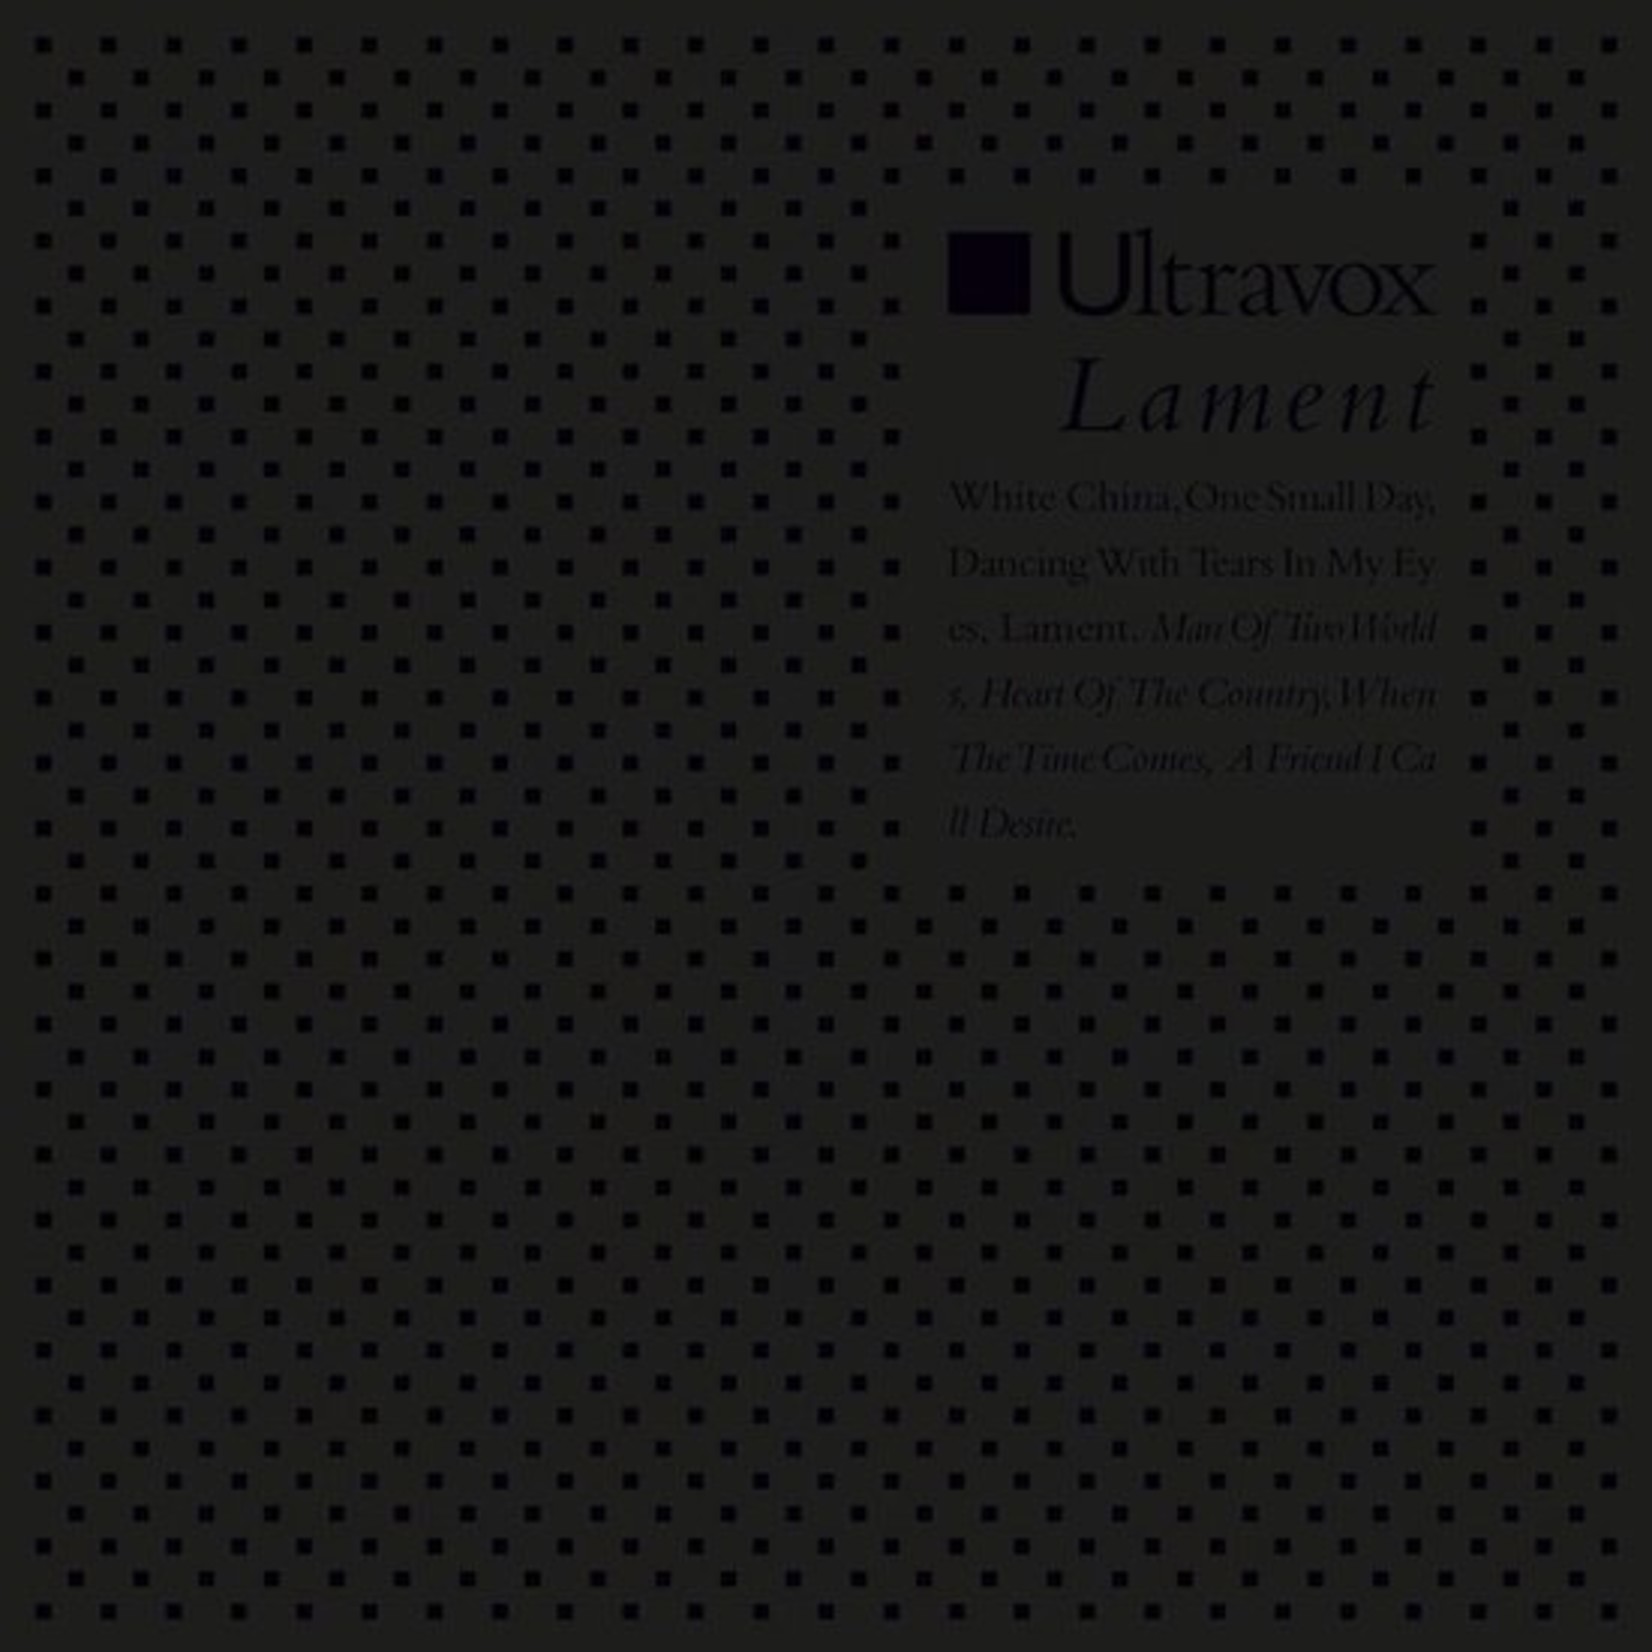 ULTRAVOX -lament LP